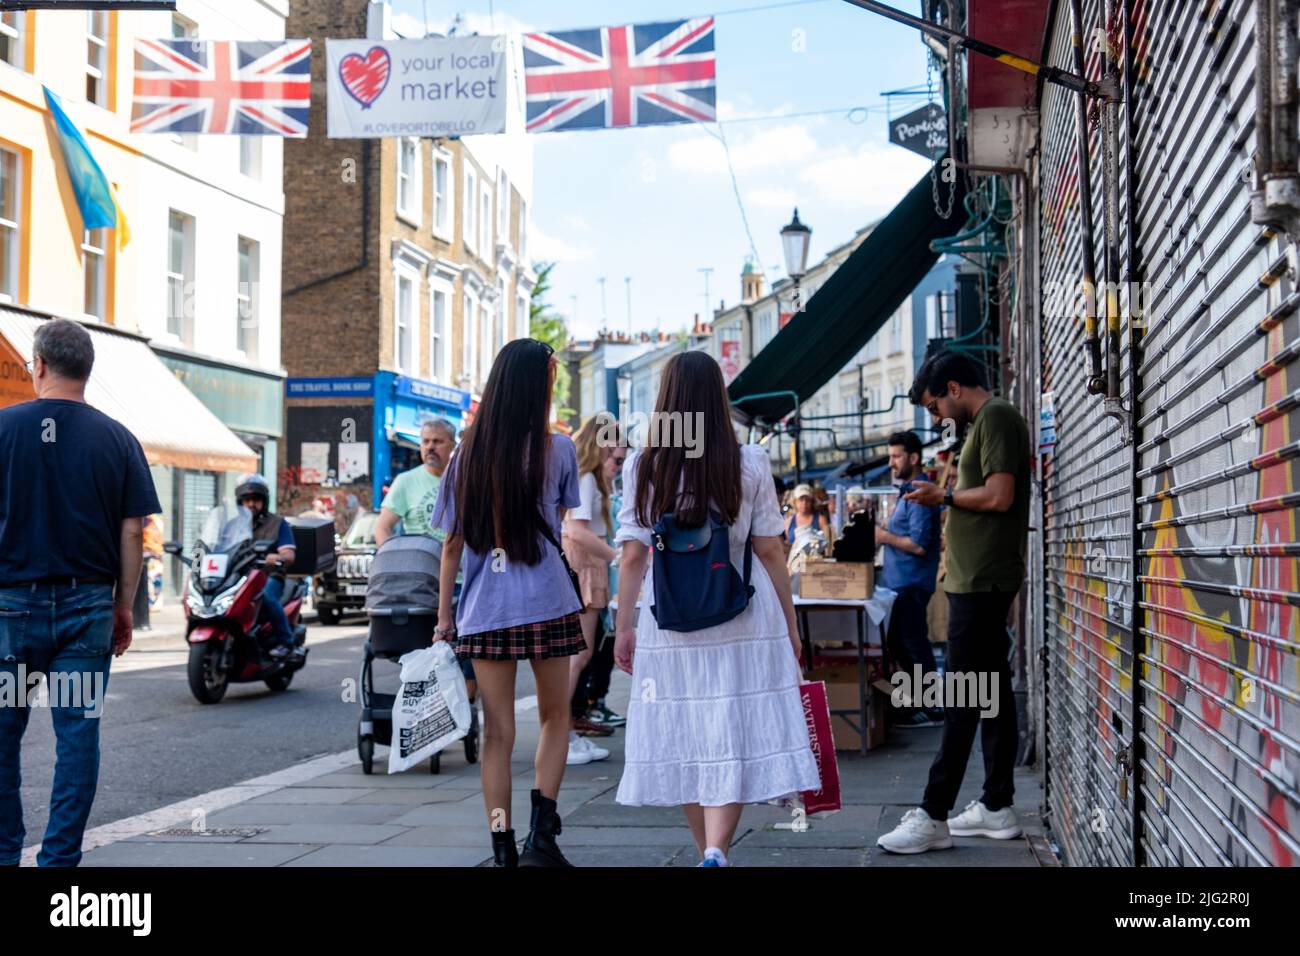 London - Juni 2022: Portobello Market in Notting Hill, West London. Ein Wahrzeichen Straßenmarkt, der für seine Antiquitäten berühmt ist. Stockfoto